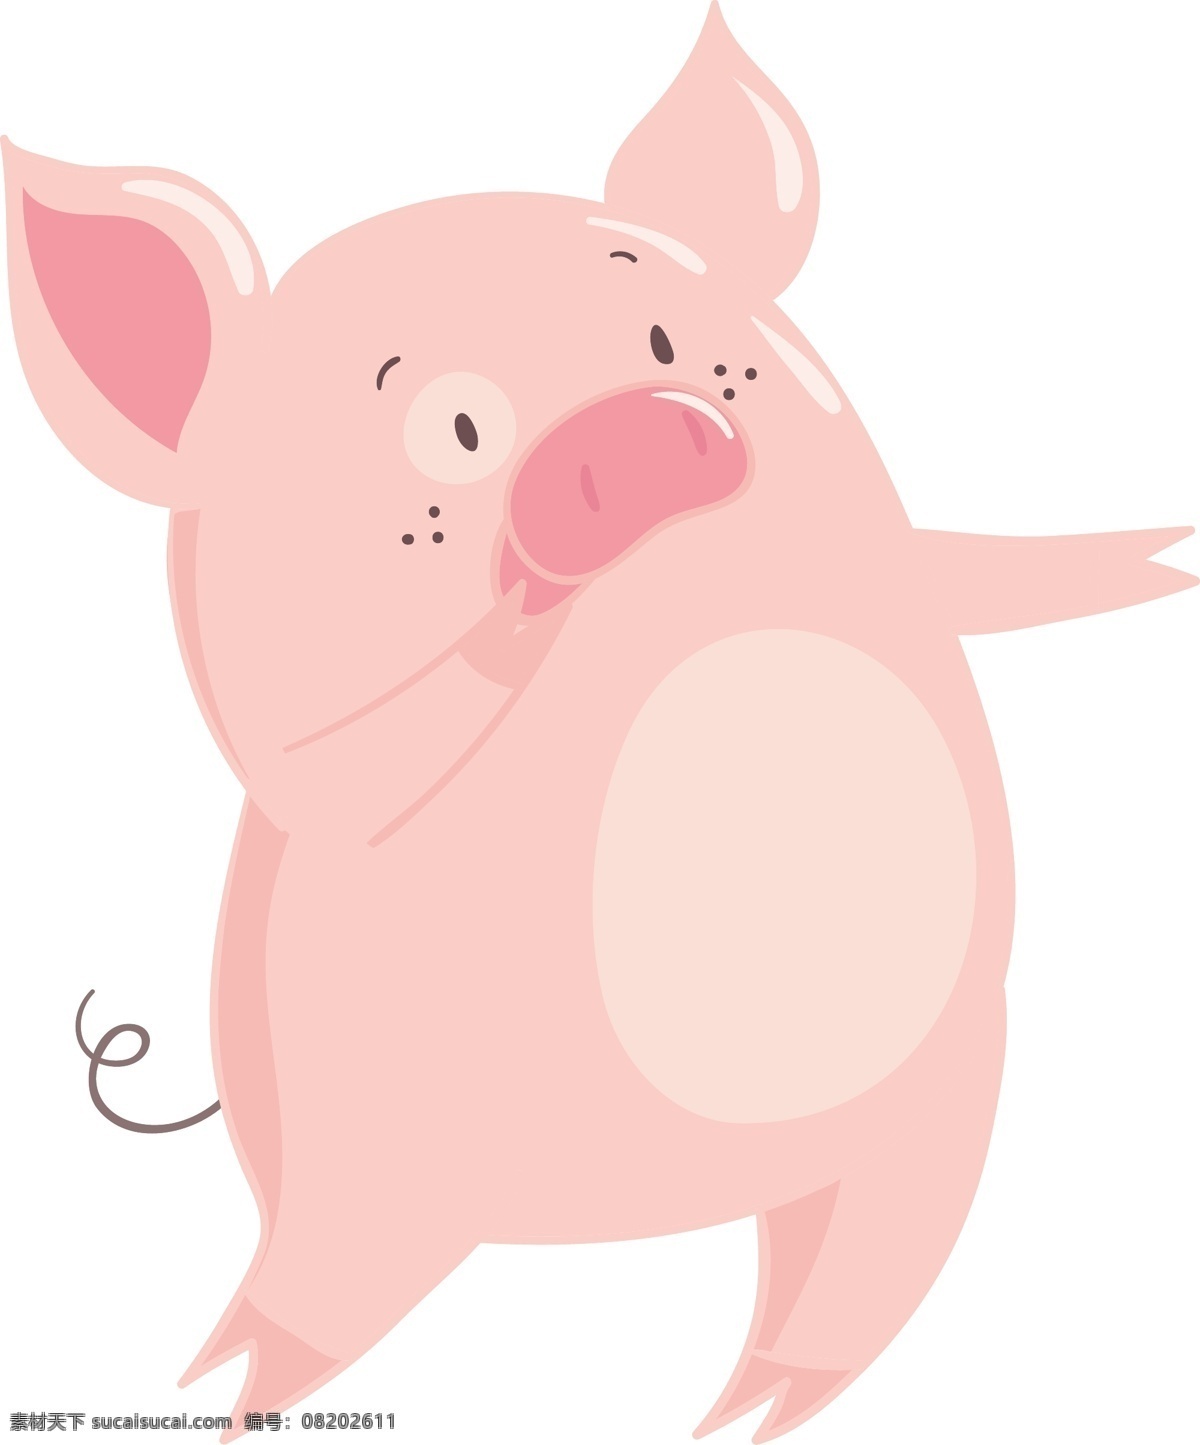 2019 猪年 手绘 卡通 粉色 小 猪 原创 商用 元素 可爱 动物 节日 装饰